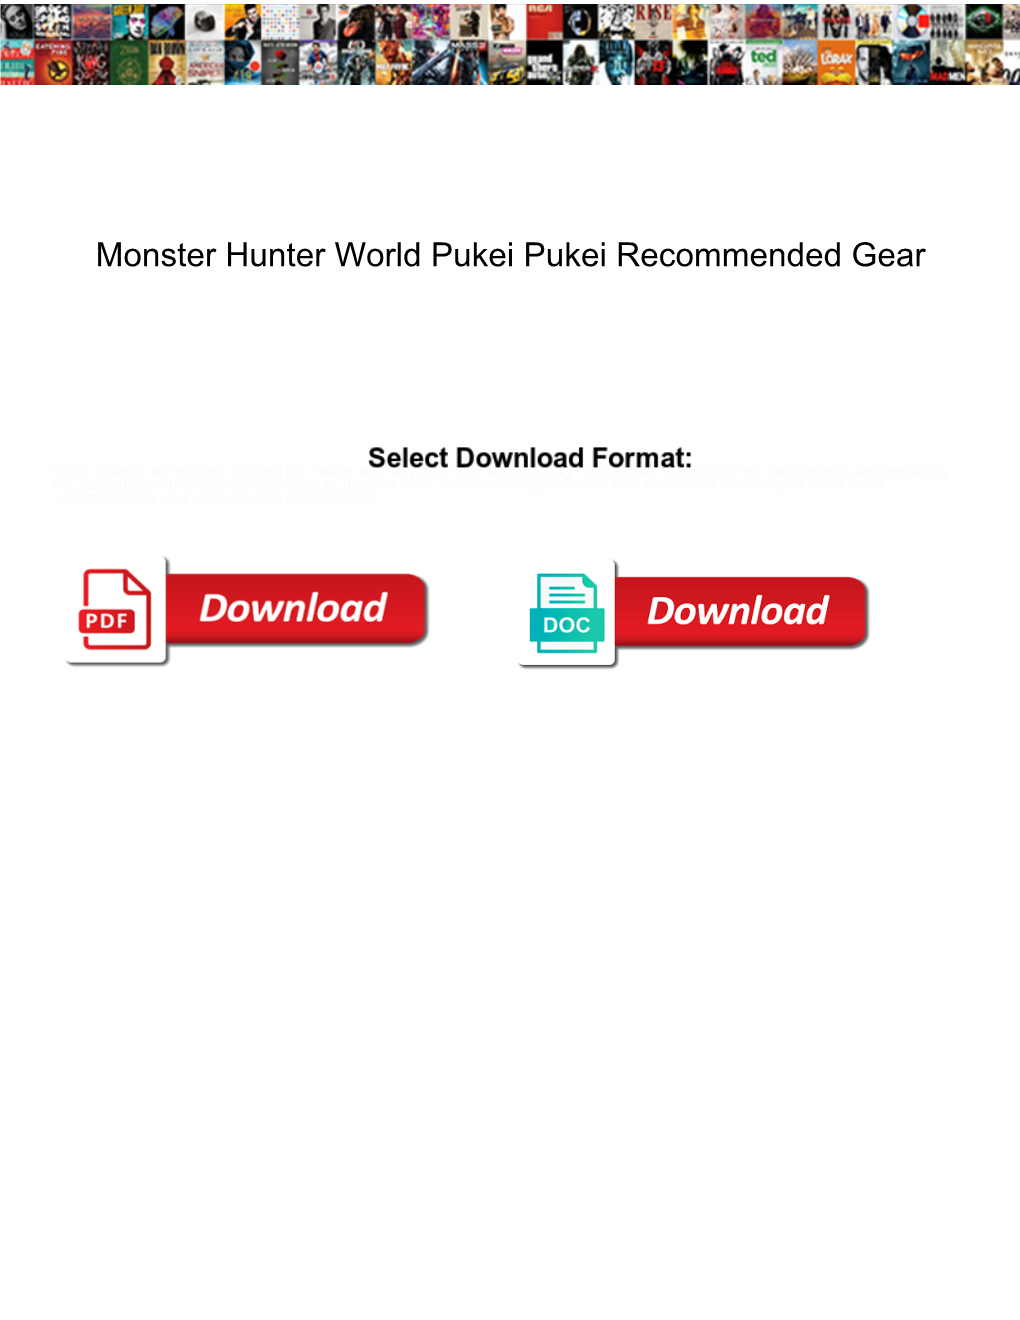 Monster Hunter World Pukei Pukei Recommended Gear